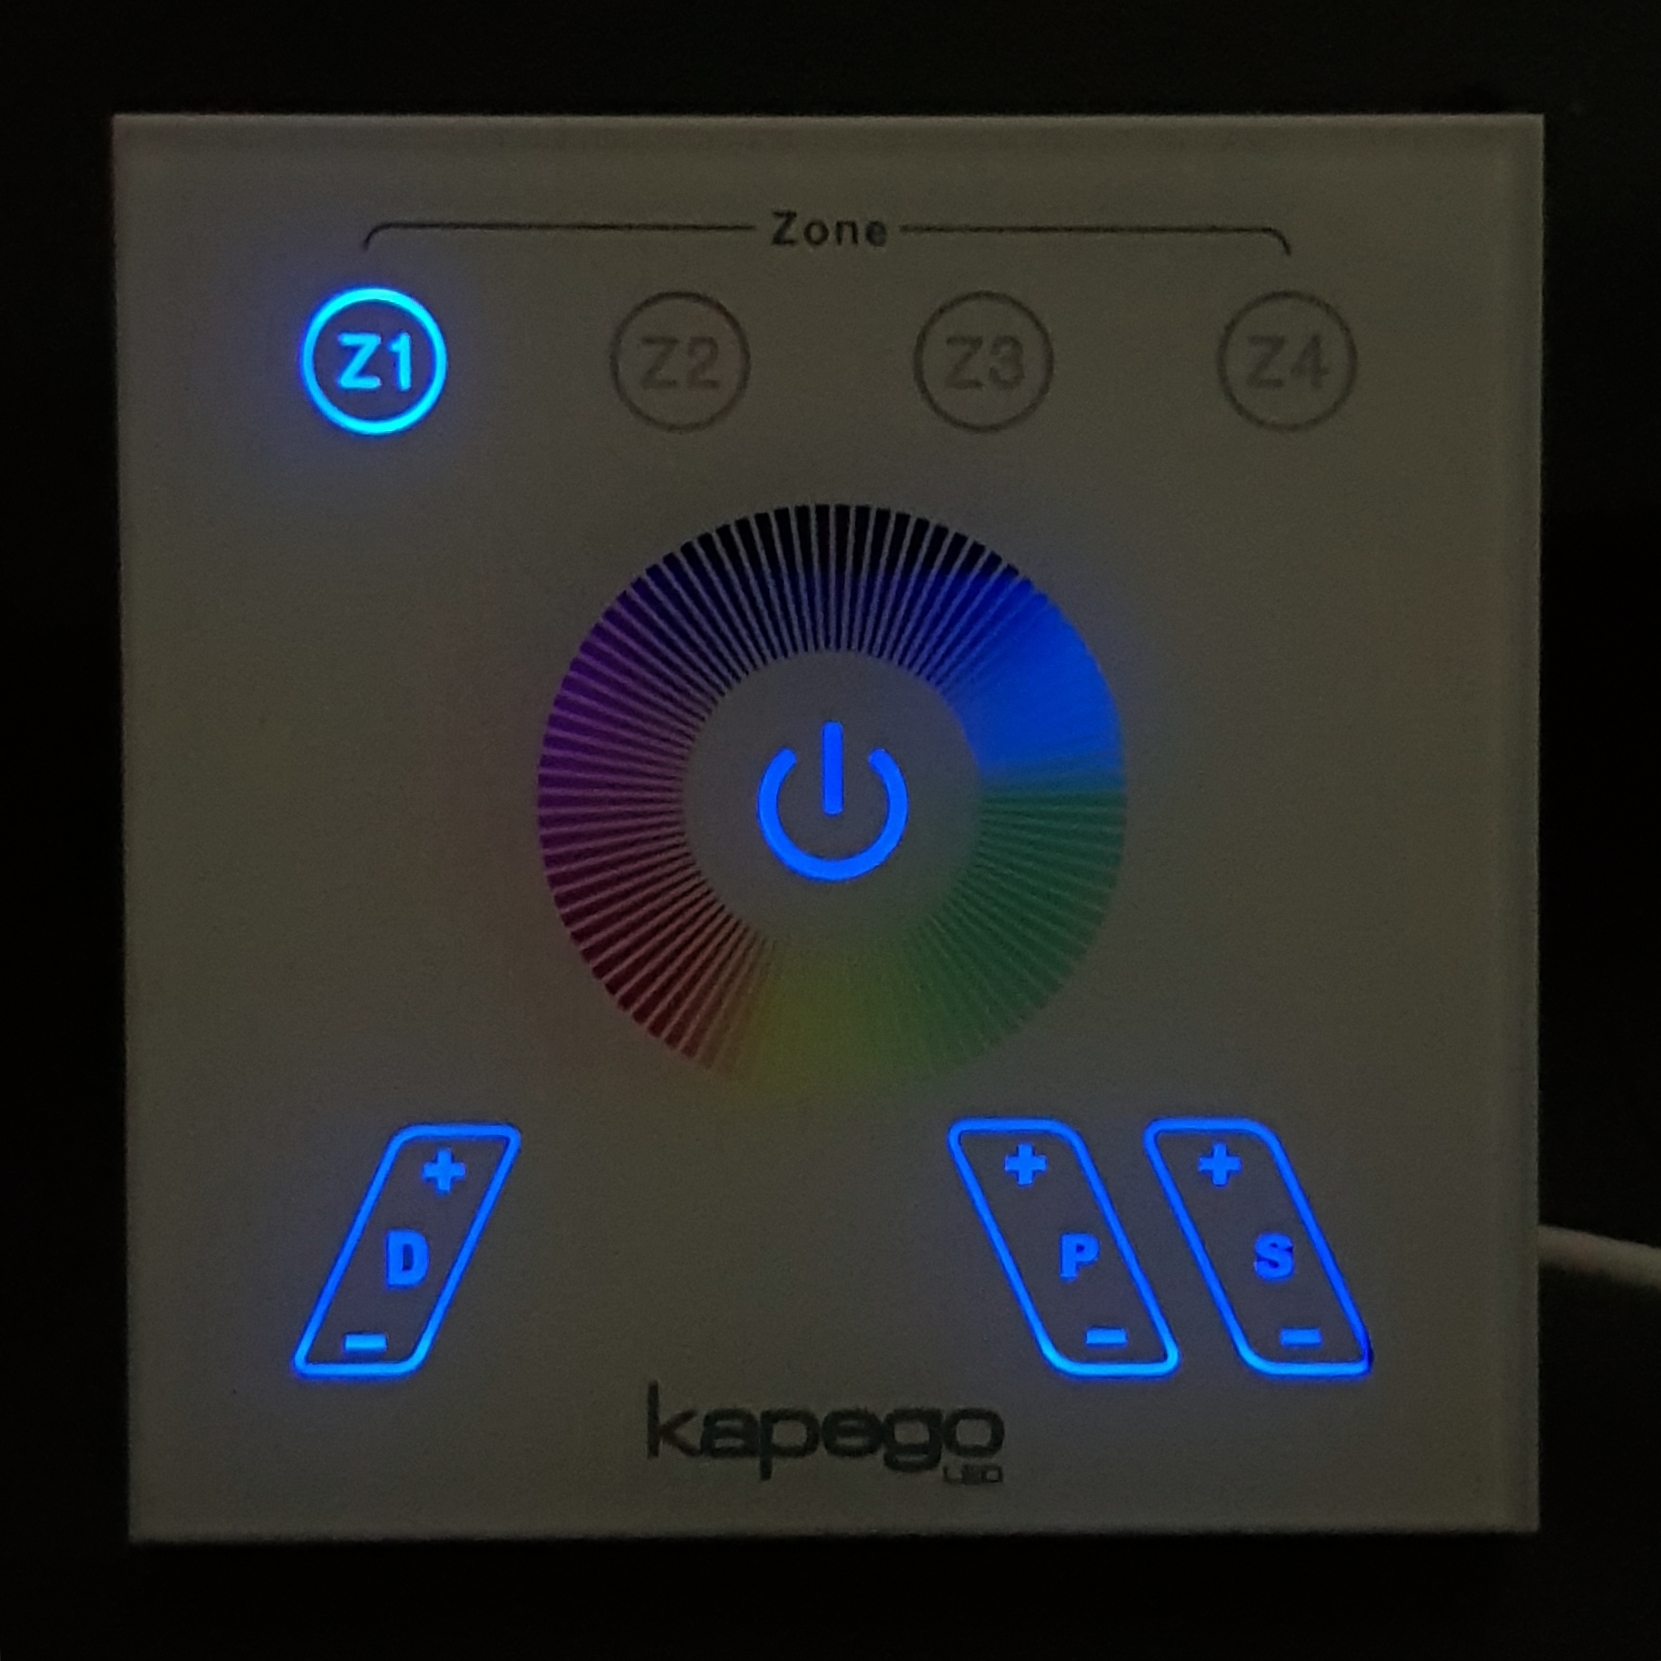 oder Erweiterungsgerät Zusatz Funk RGB Controller KAPEGO RF Color Zusatz 